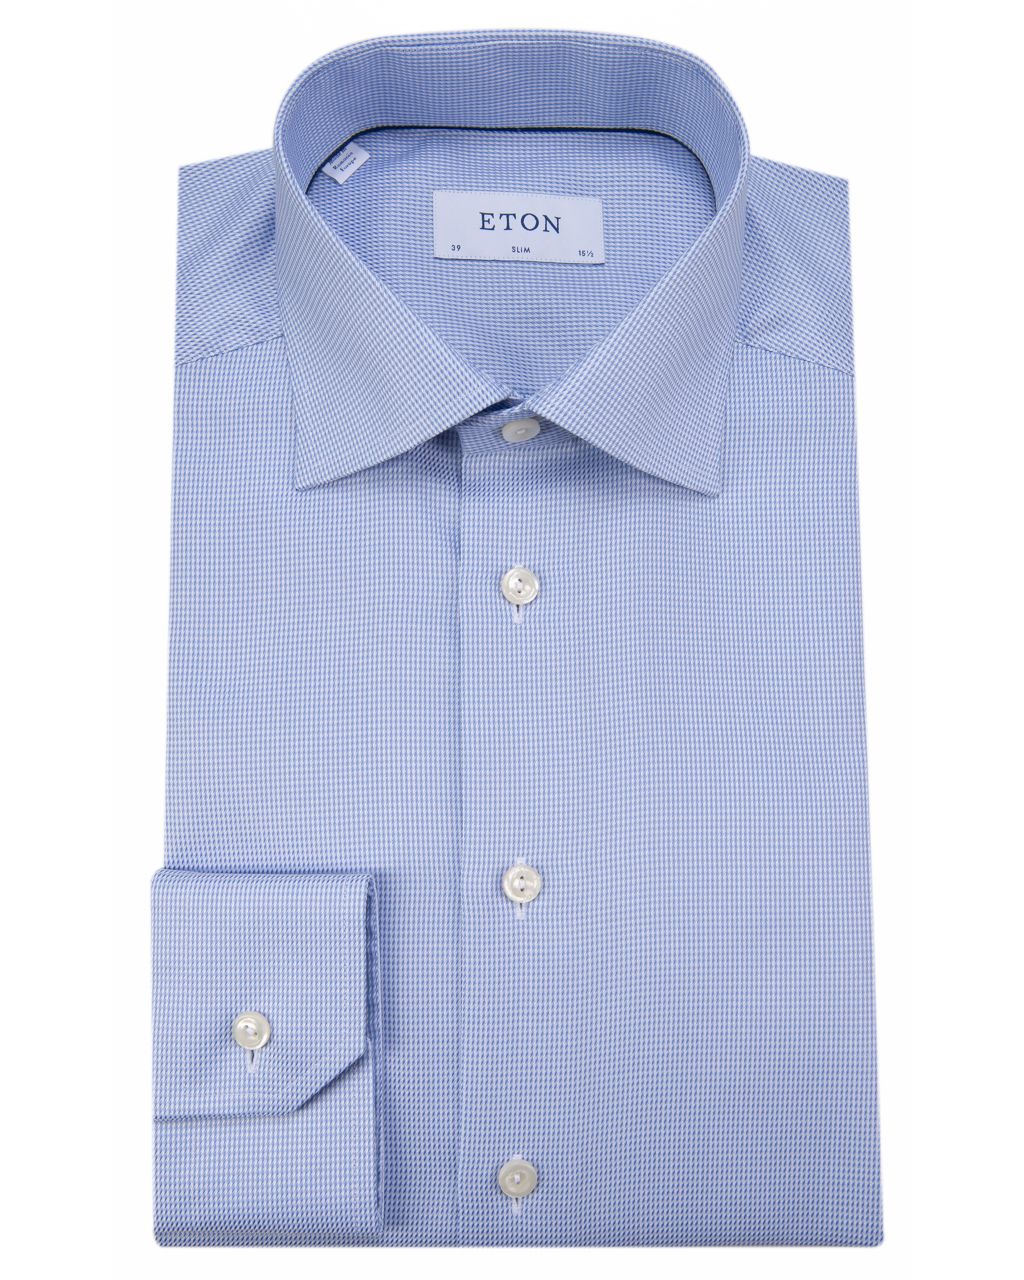 ETON Slim fit Overhemd LM Lichtblauw dessin 050485-001-37/38